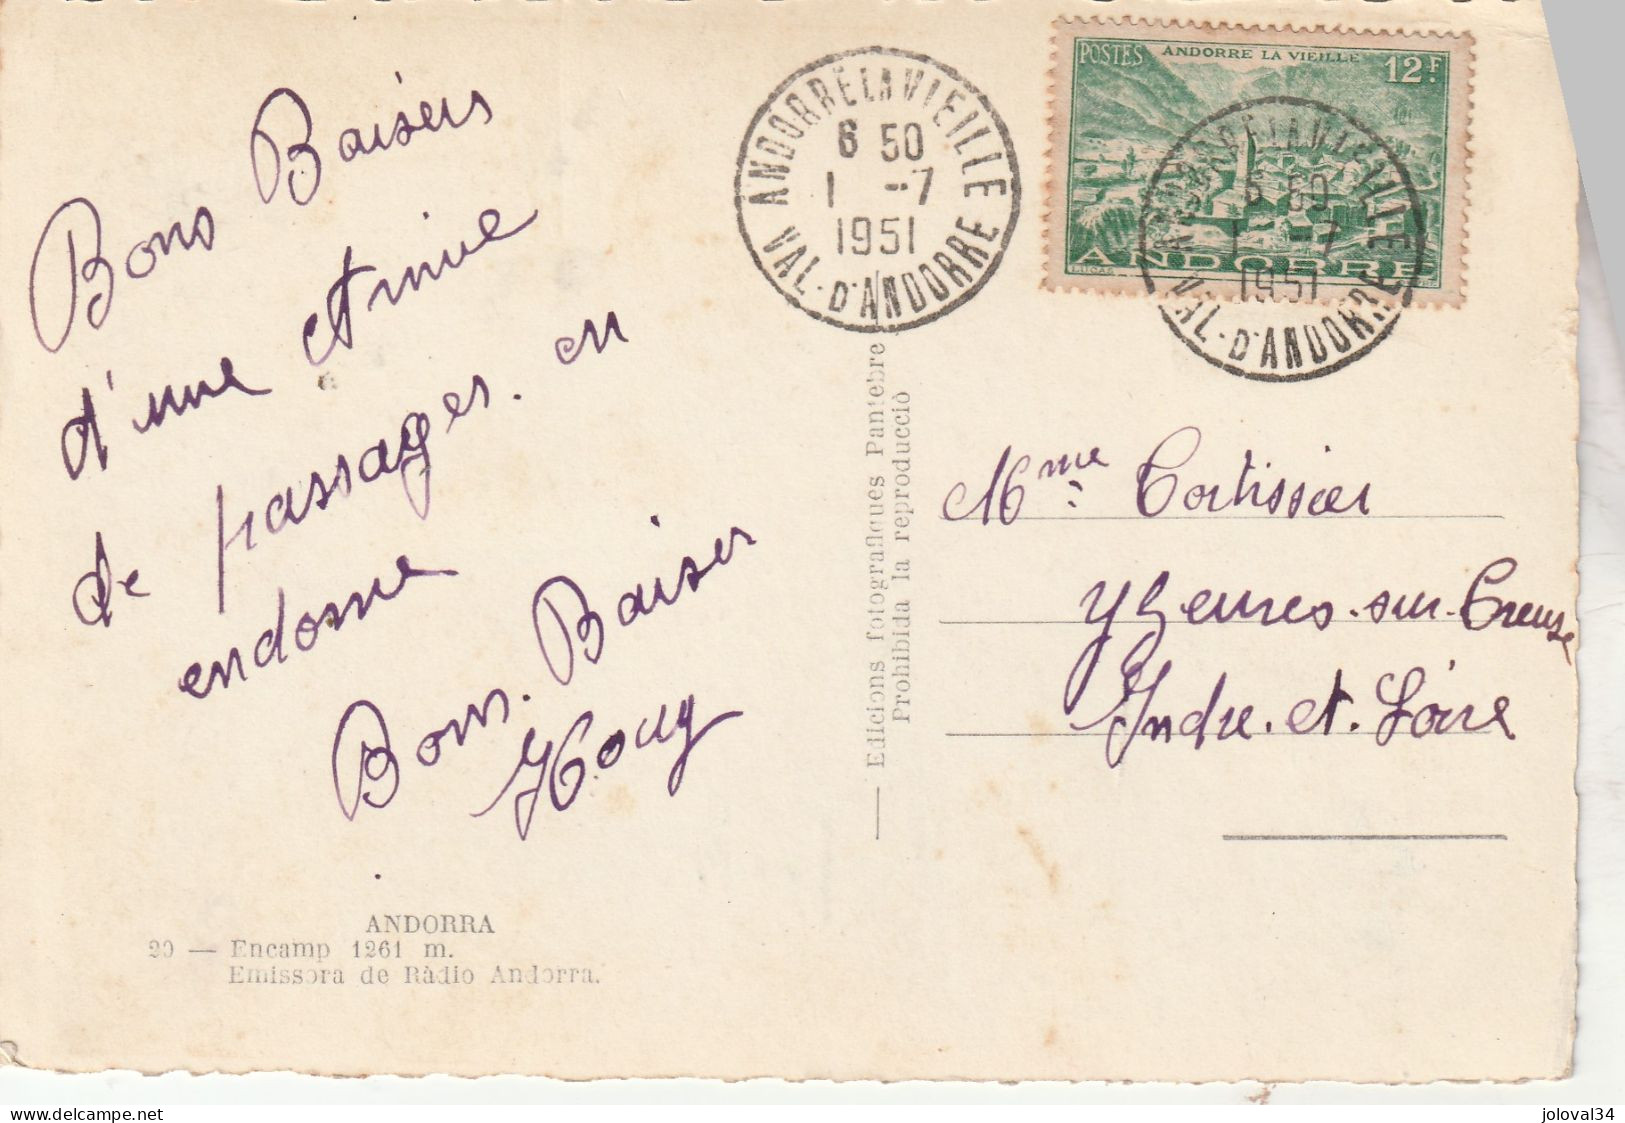 Andorre Yvert 130 Cachet Andorre La Vieille 1/7/1951 Sur Carte Postale Encamp - Covers & Documents